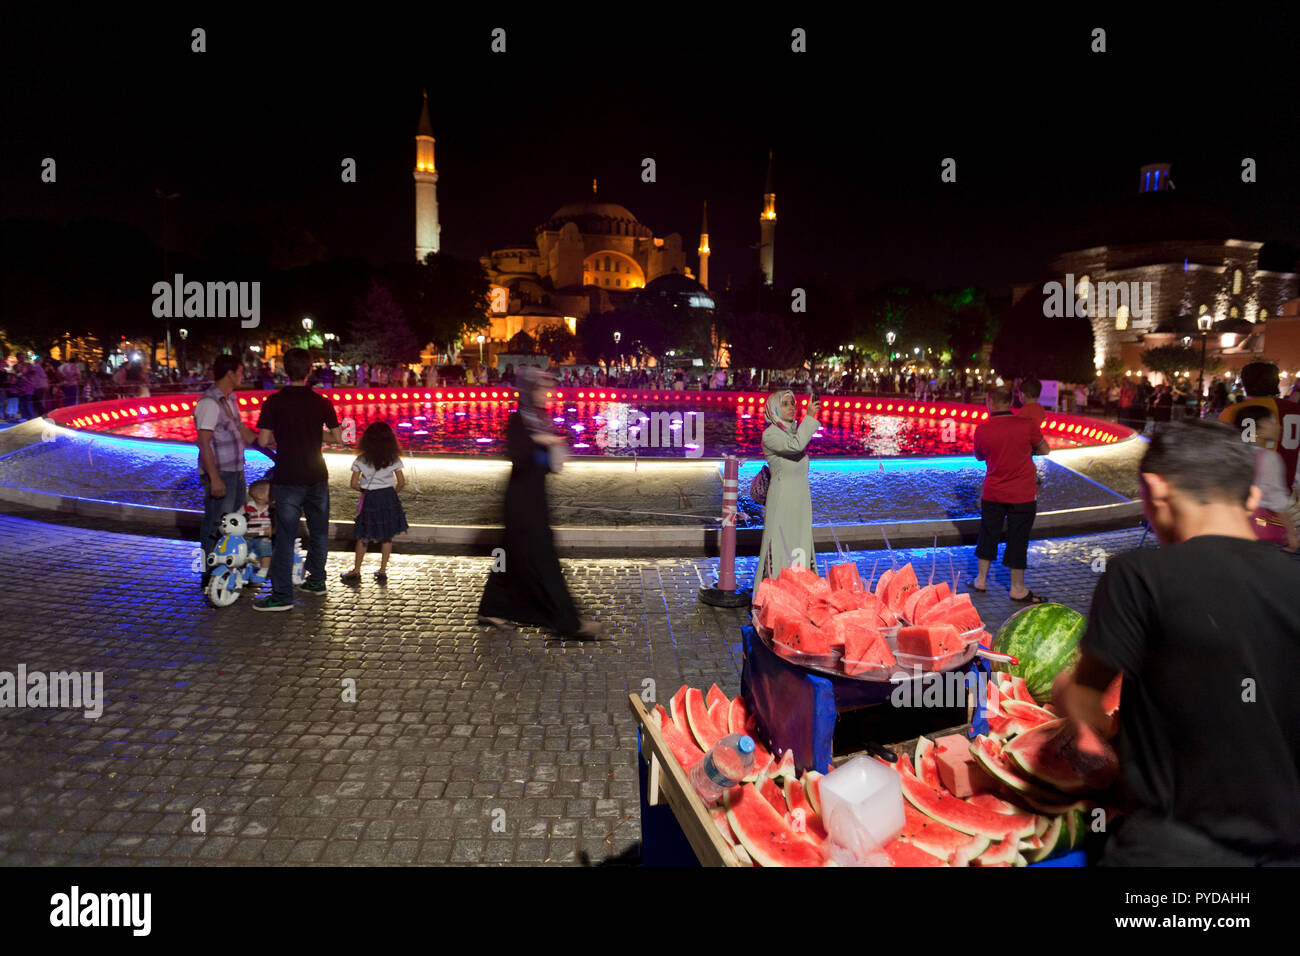 Fontana nel parco Sultanahment affacciato Yeni camii nuova moschea di Istanbul in Turchia Foto Stock